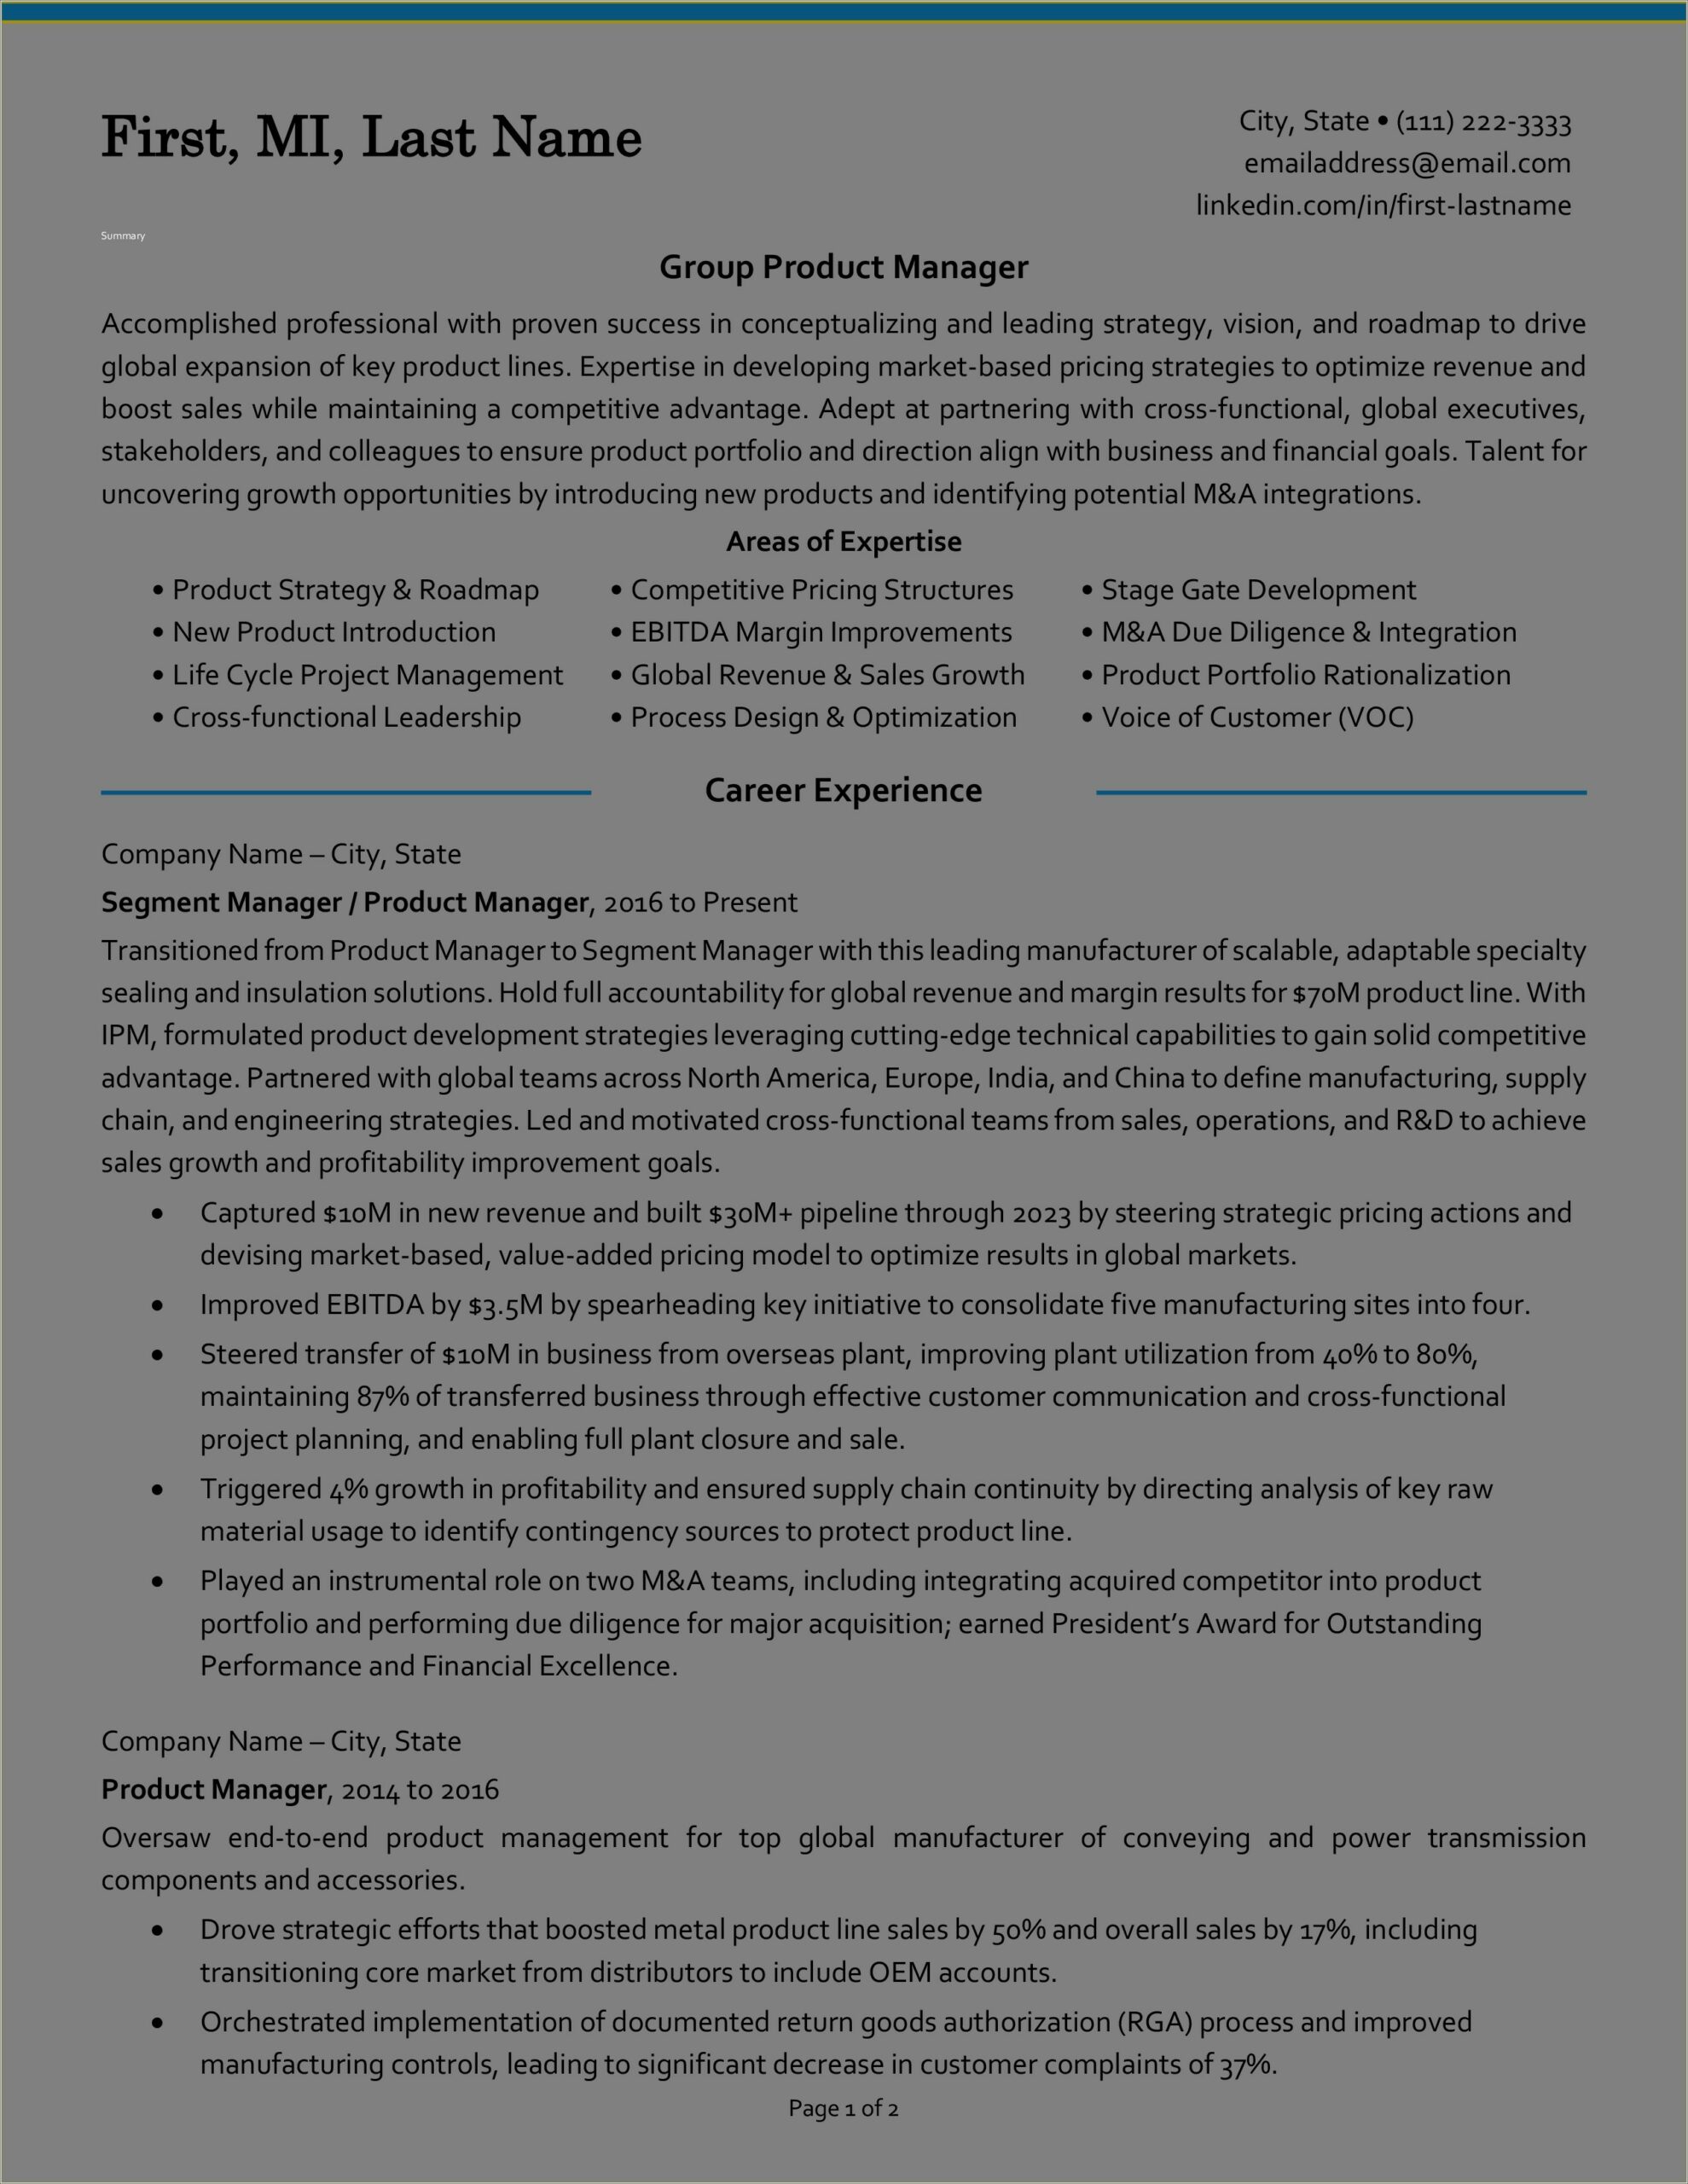 Job Application Standard Resume Format